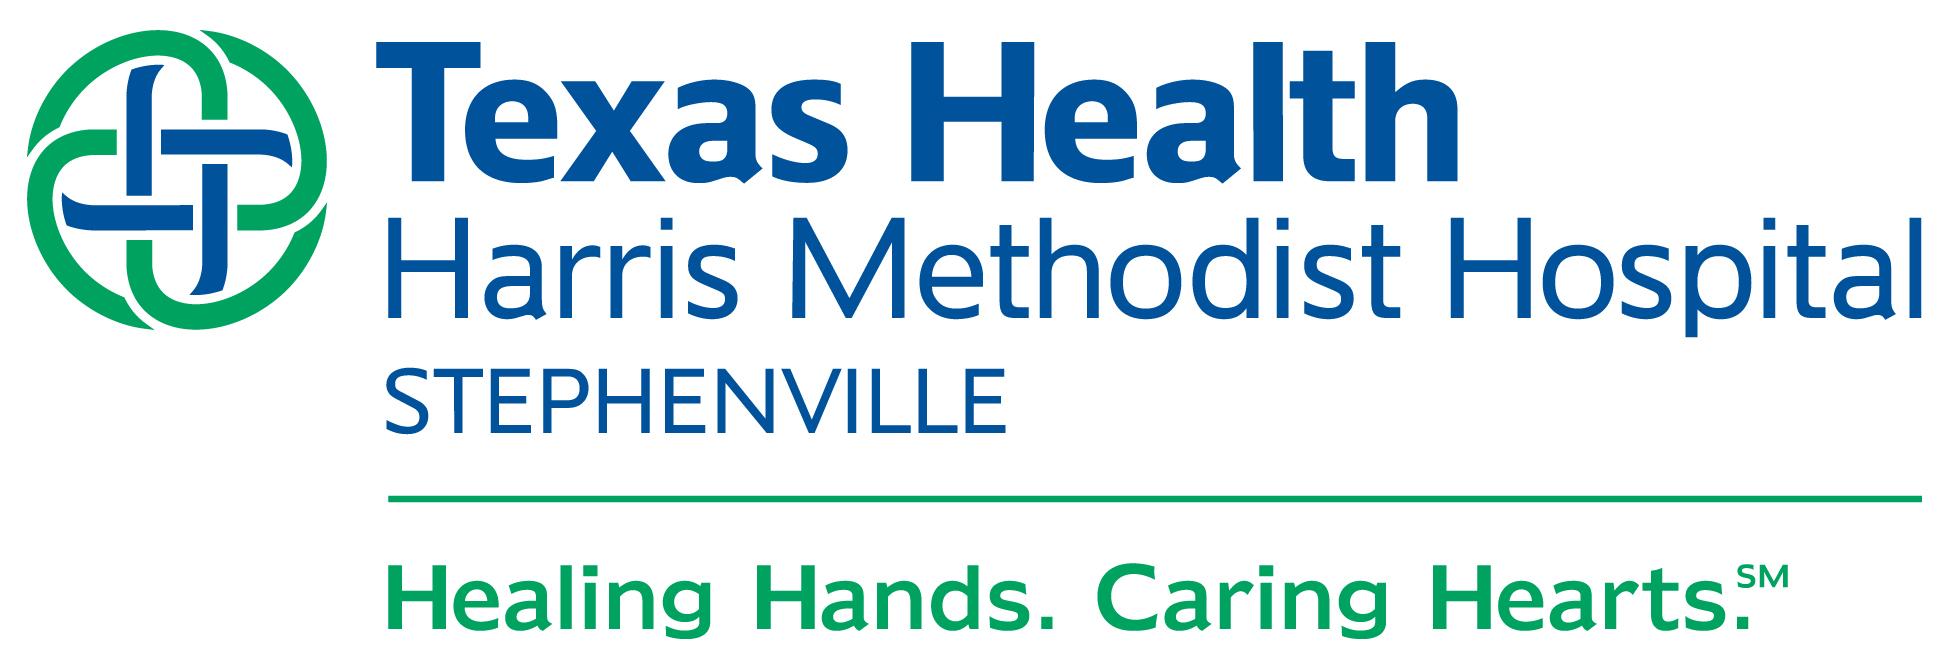 Texas Health Harris Methodist Stephenville